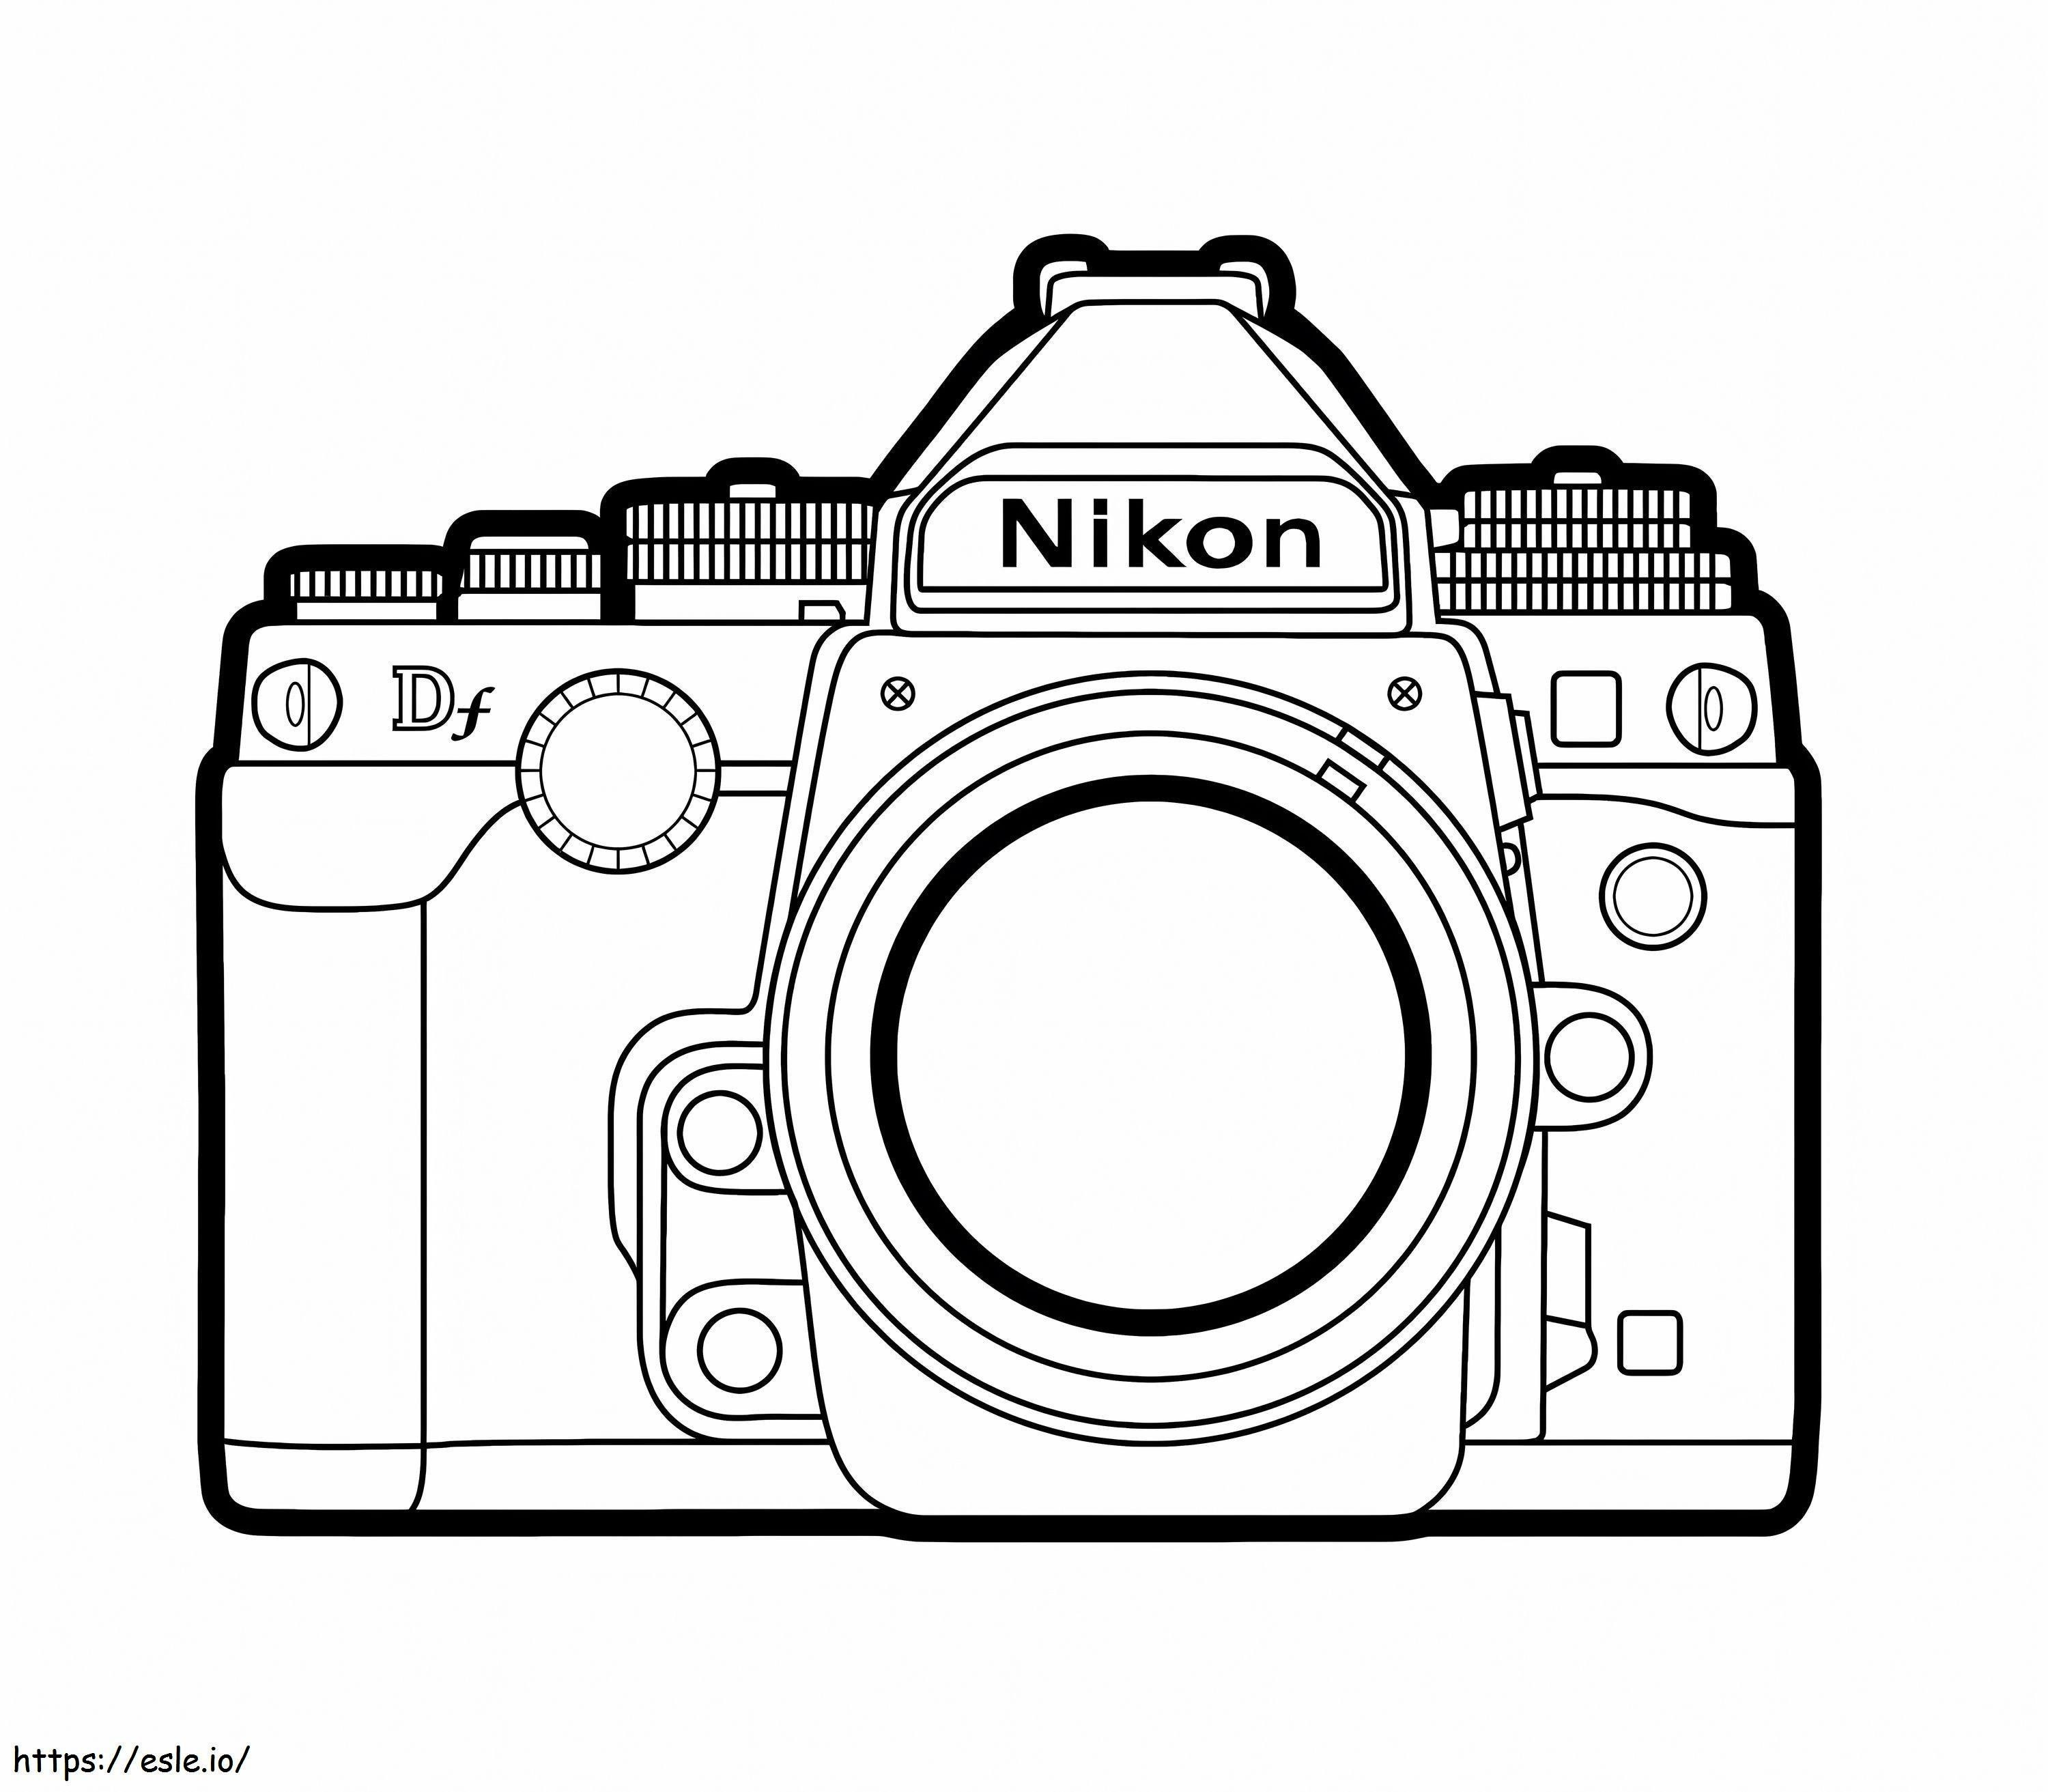 Fotocamera Nikon da colorare